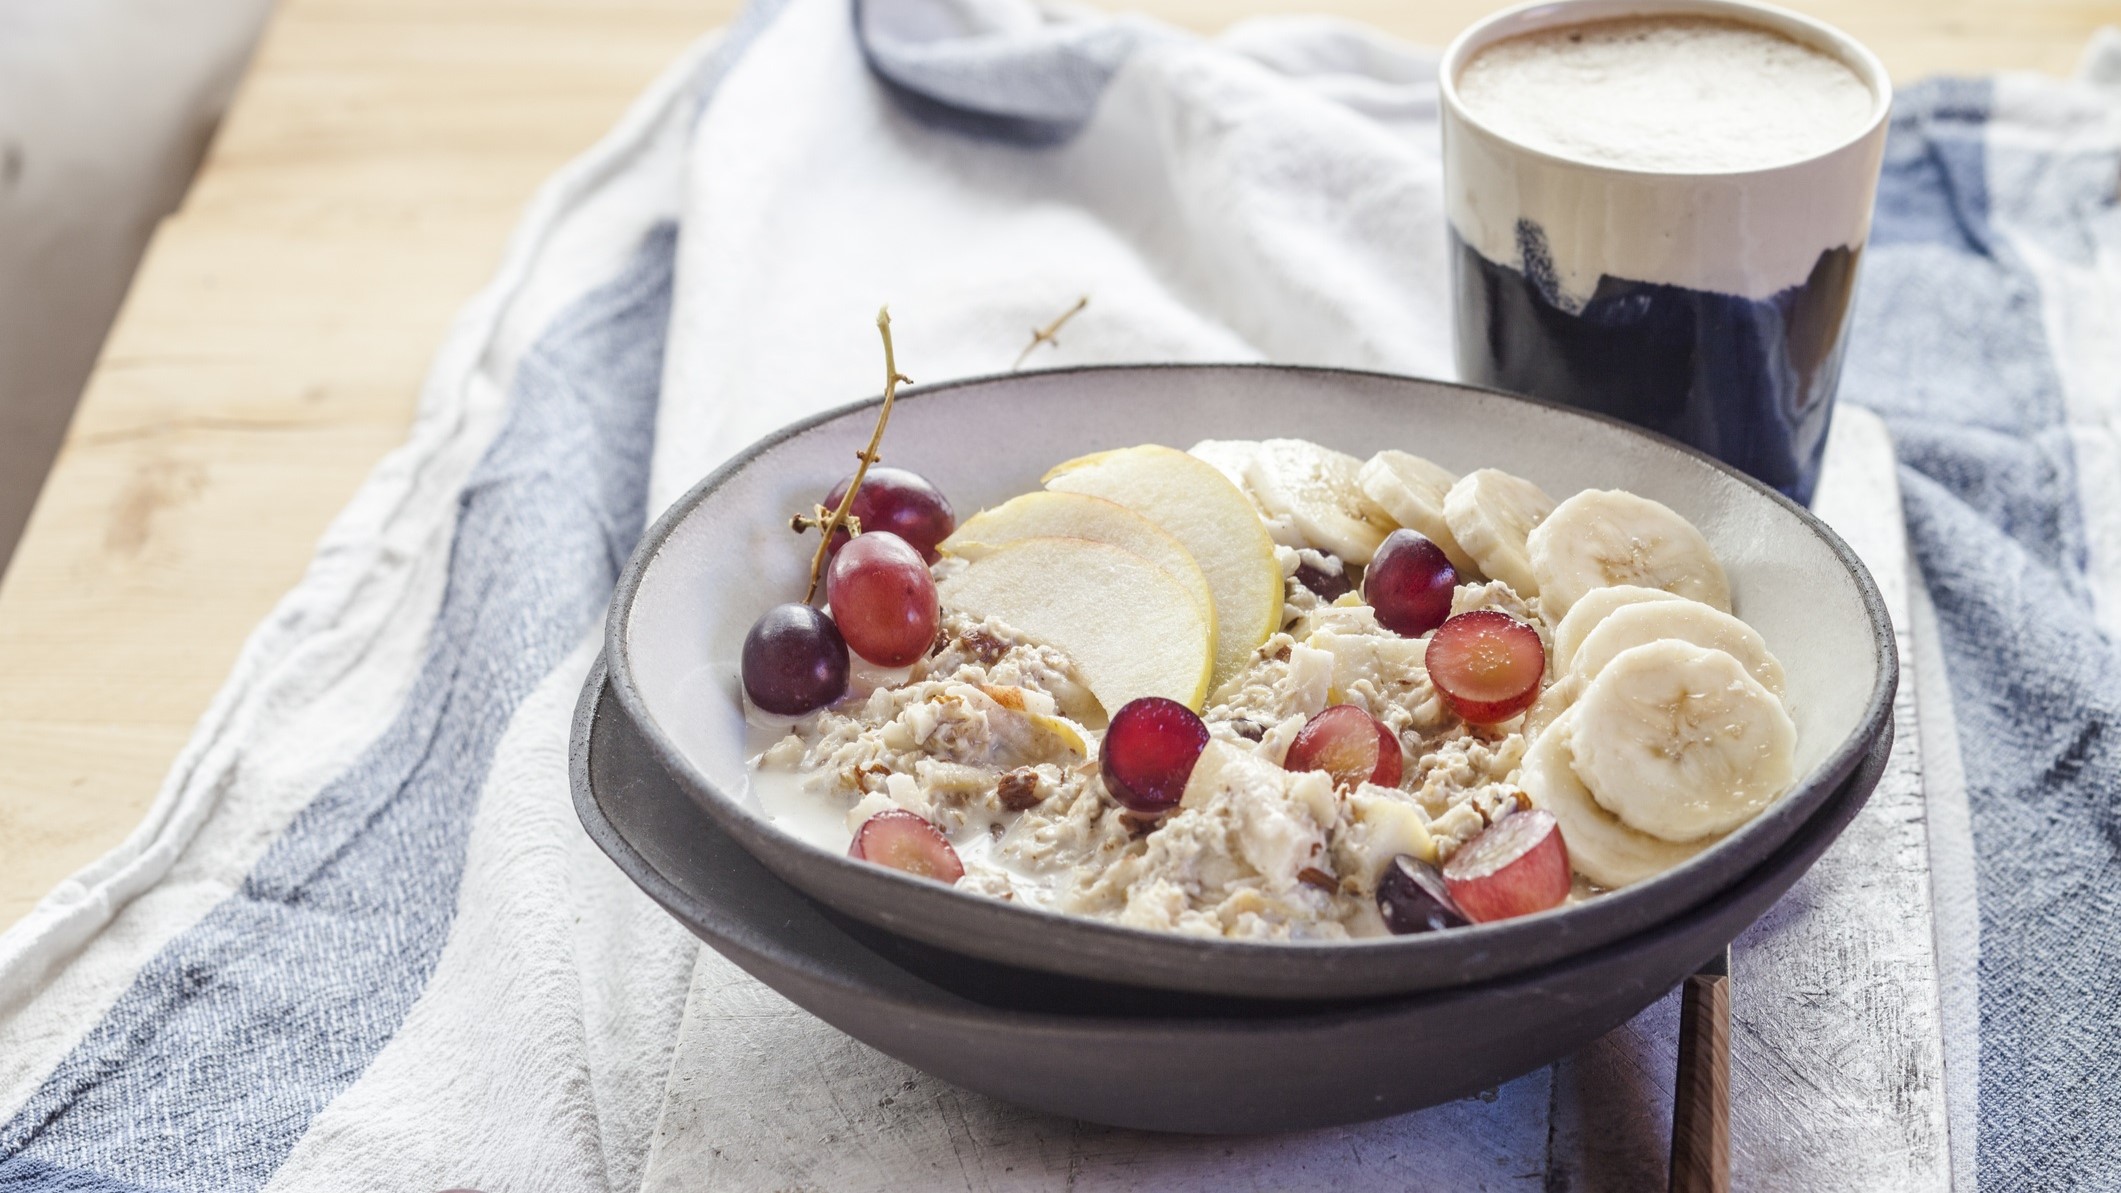 Draufsicht, schräg: Eine rustikale Schale Porridge mit Trauben, Äpfeln und Banane steht auf einem weißen Küchenhandtuch, das blaue Streifen am Rand hat.